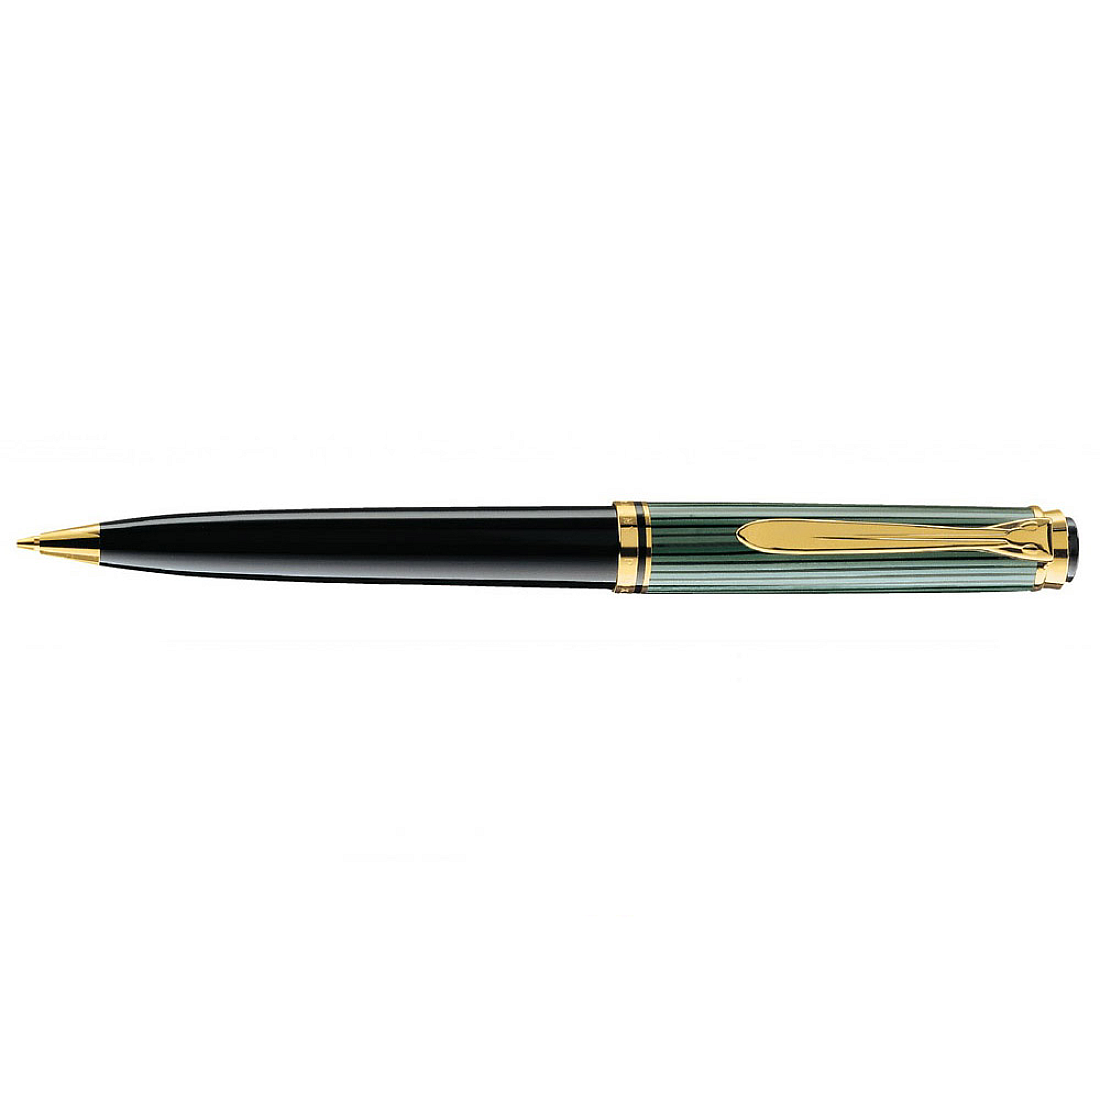 Pelikan Souverän D600 Black/Green Mechanical pencil 0.7mm